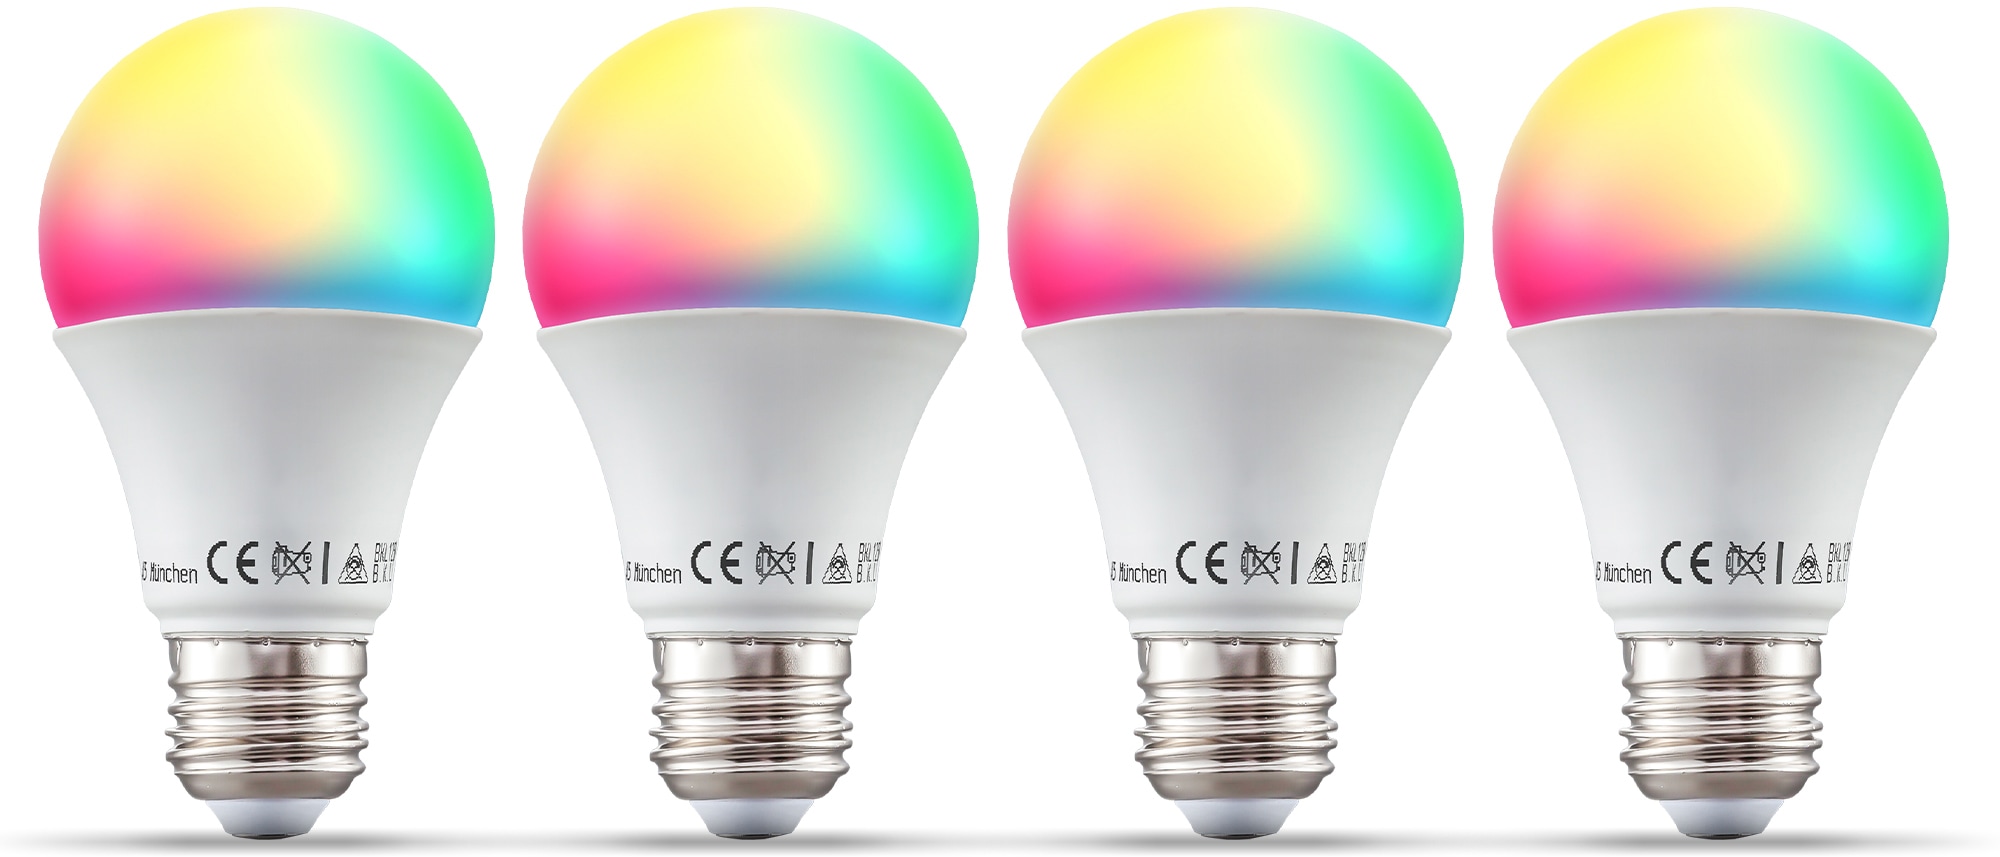 B.K.Licht LED-Leuchtmittel, E27, 4 St., Farbwechsler, Smart Home LED-Lampe, RGB, WiFi, App-Steuerung, dimmbar